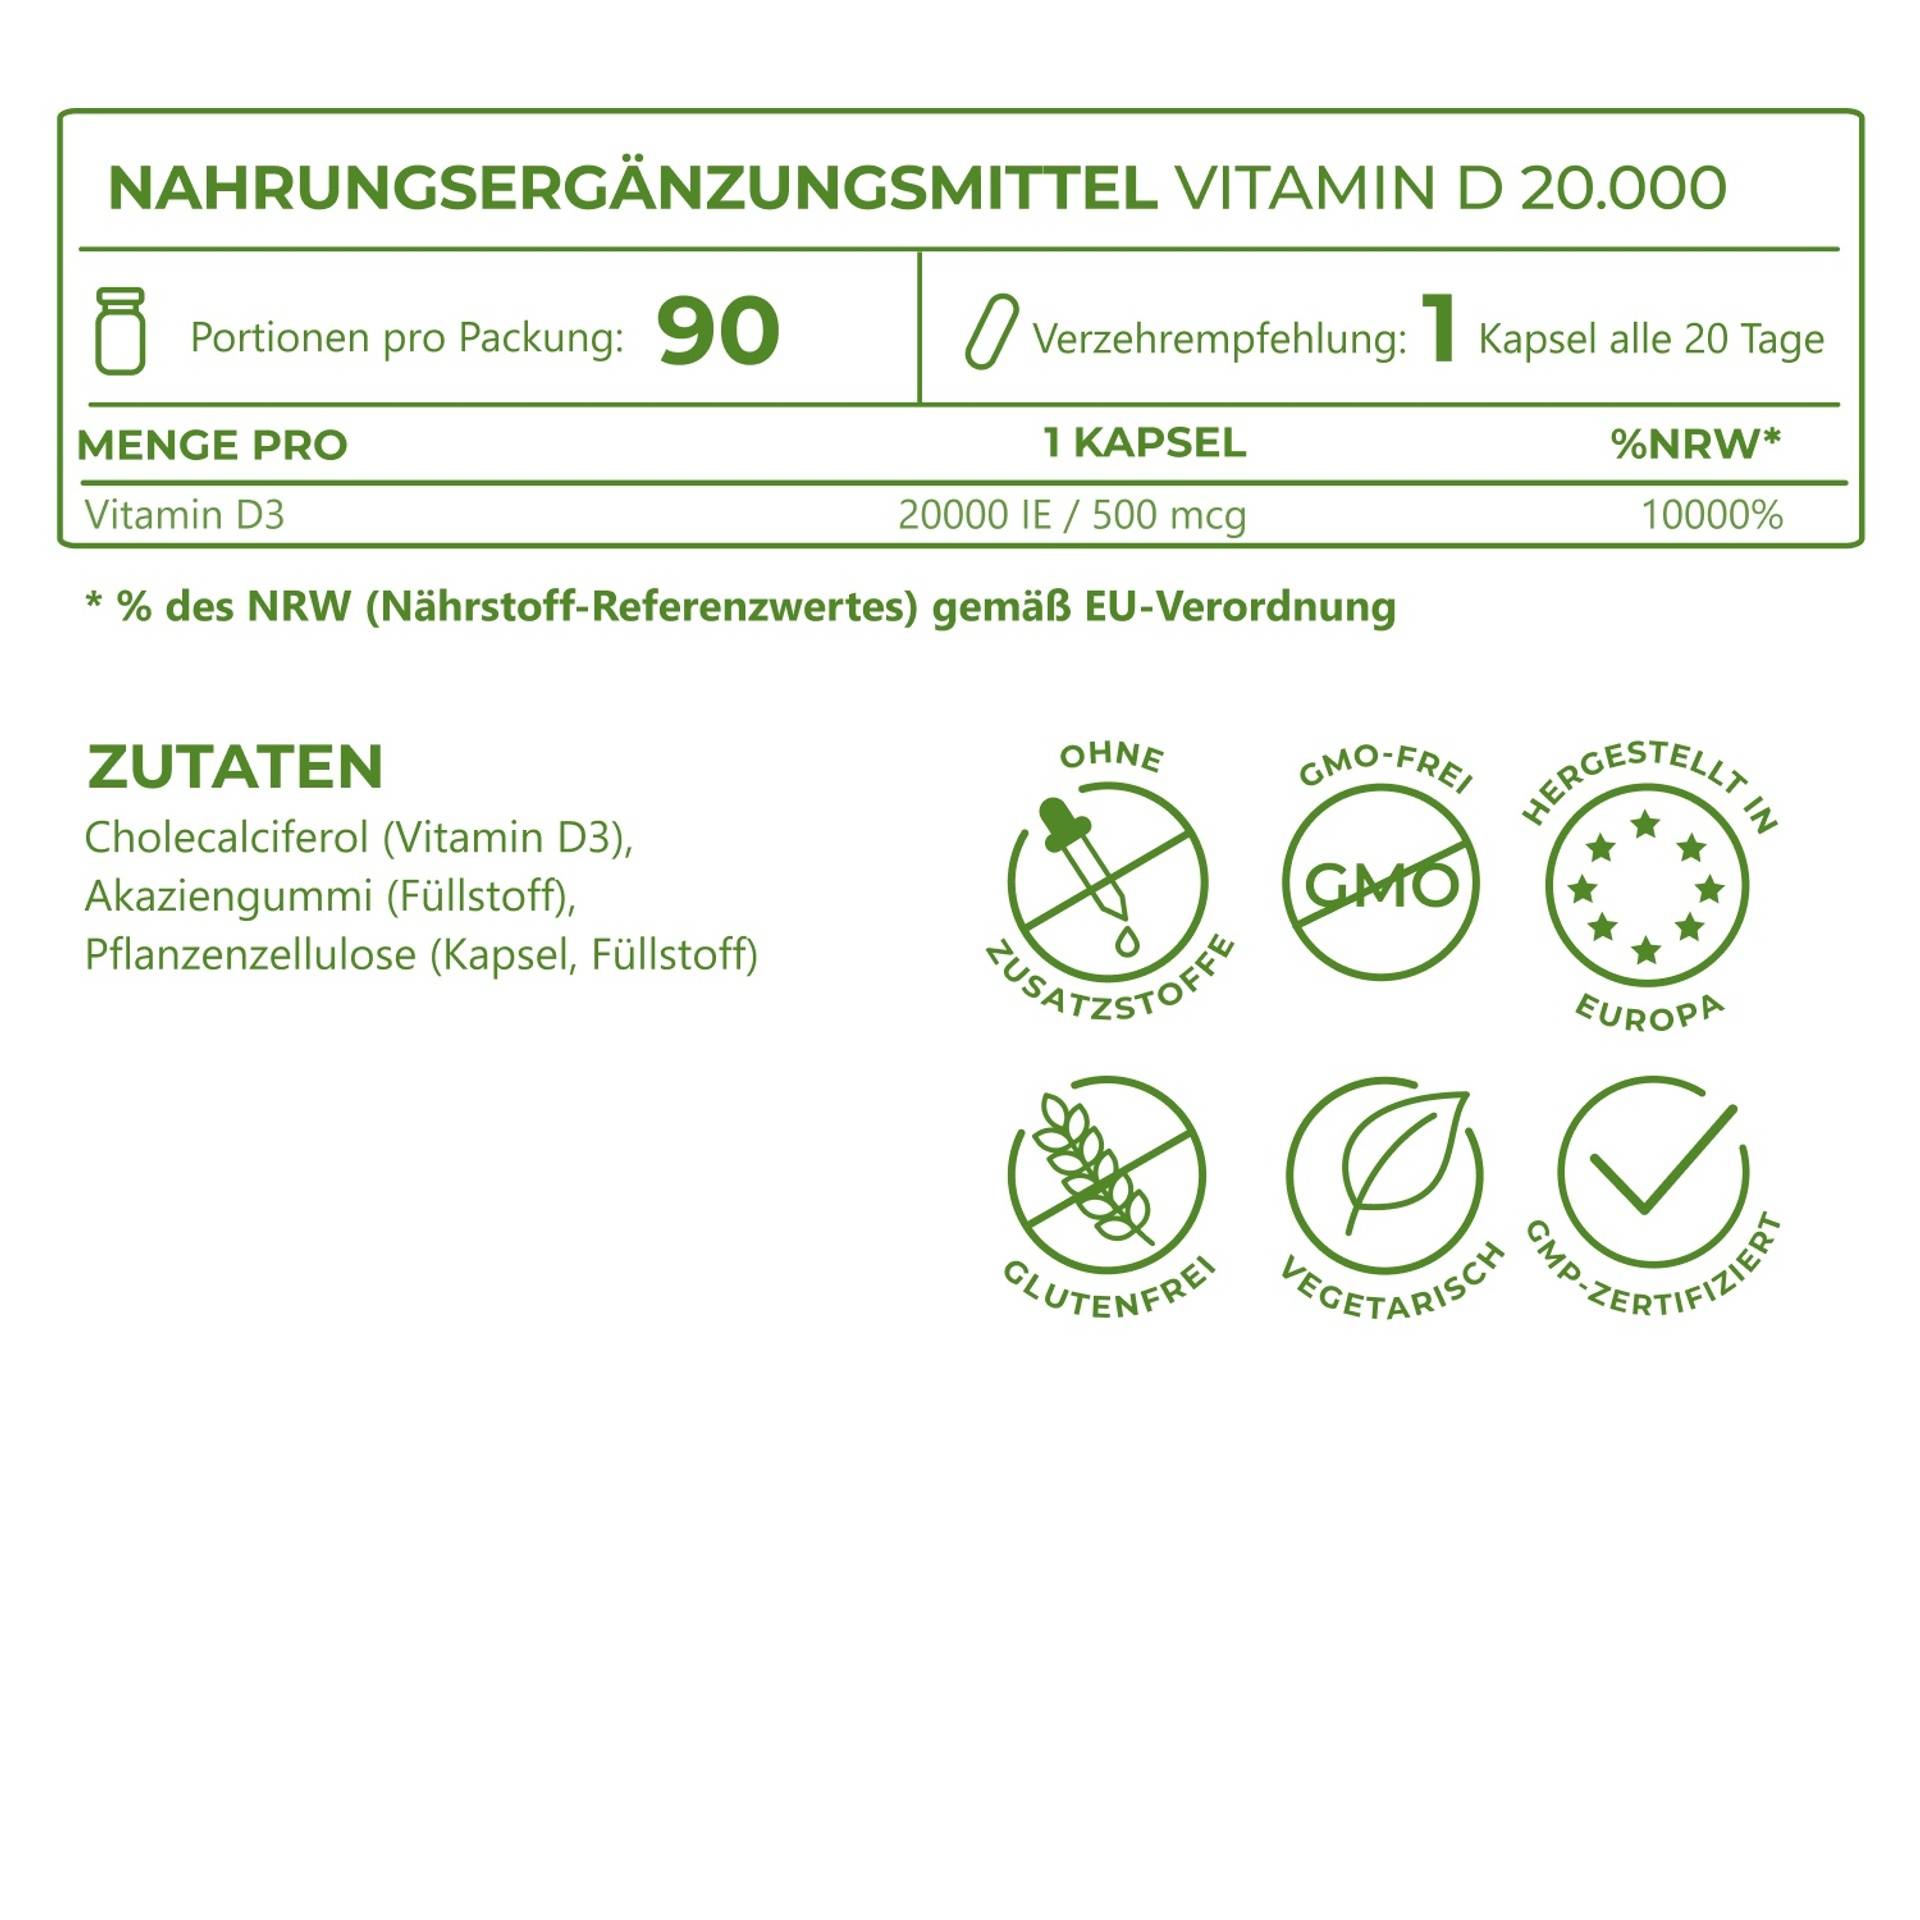 5_Ingredients_Vitamin D3 20000_6951-13_DE.png